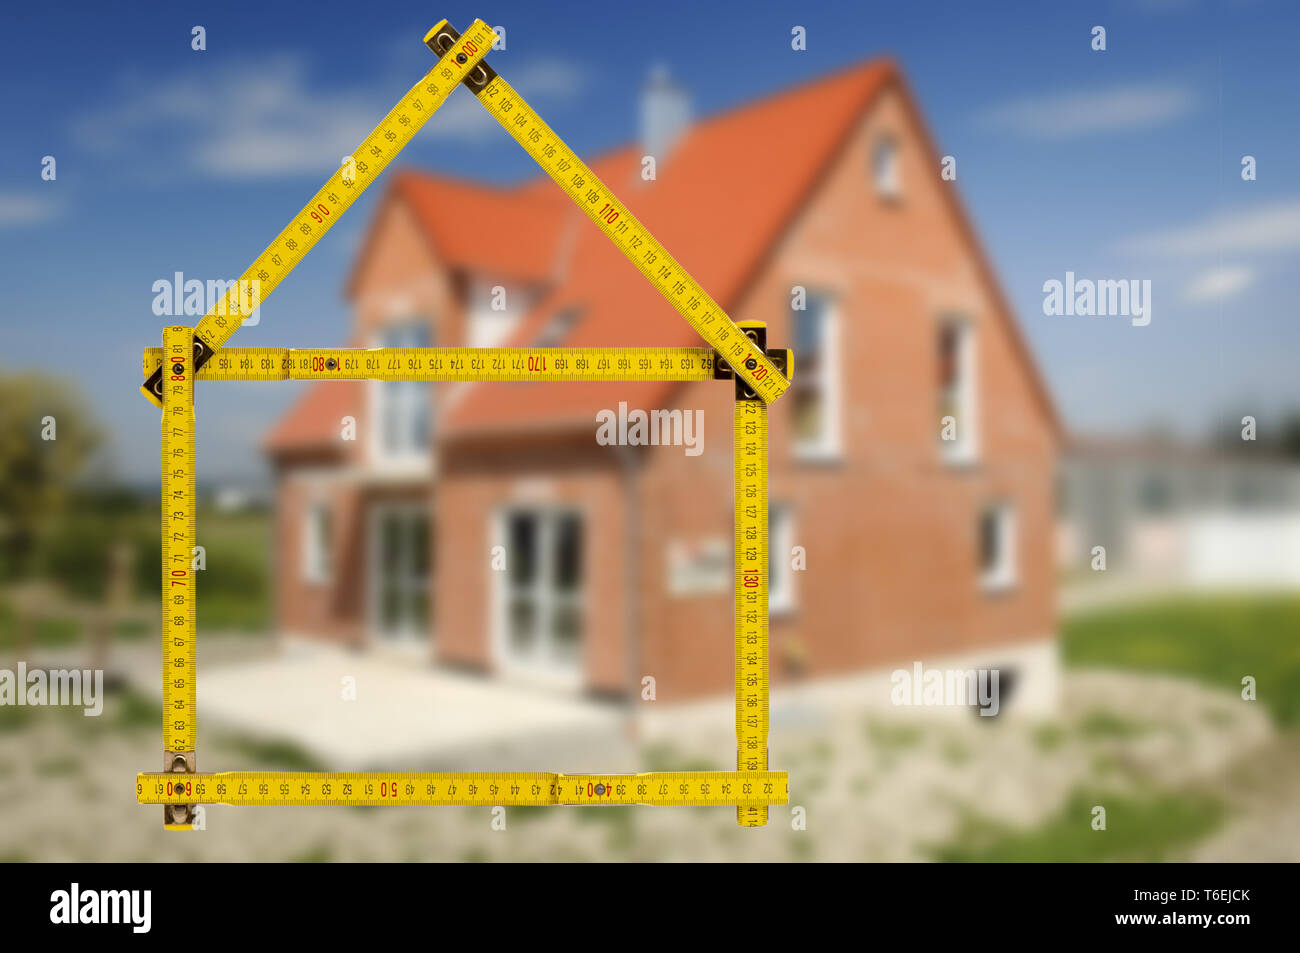 Guscio di casa in costruzione con righello in mano di agente immobiliare Foto Stock